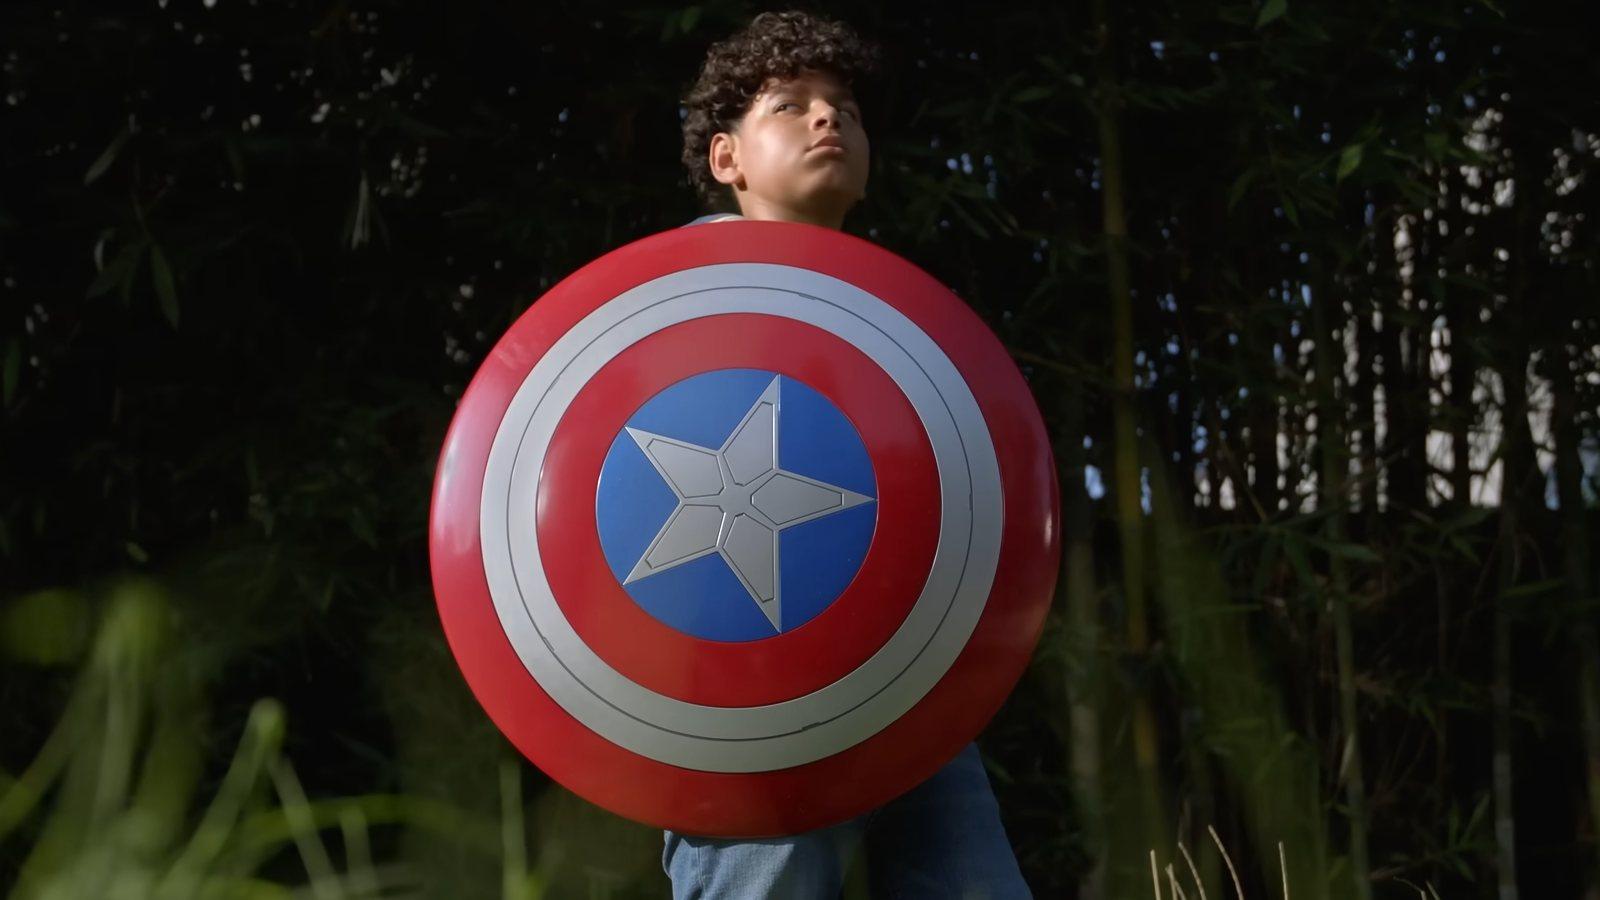 MTG Marvel Header Boy holding cap's shield